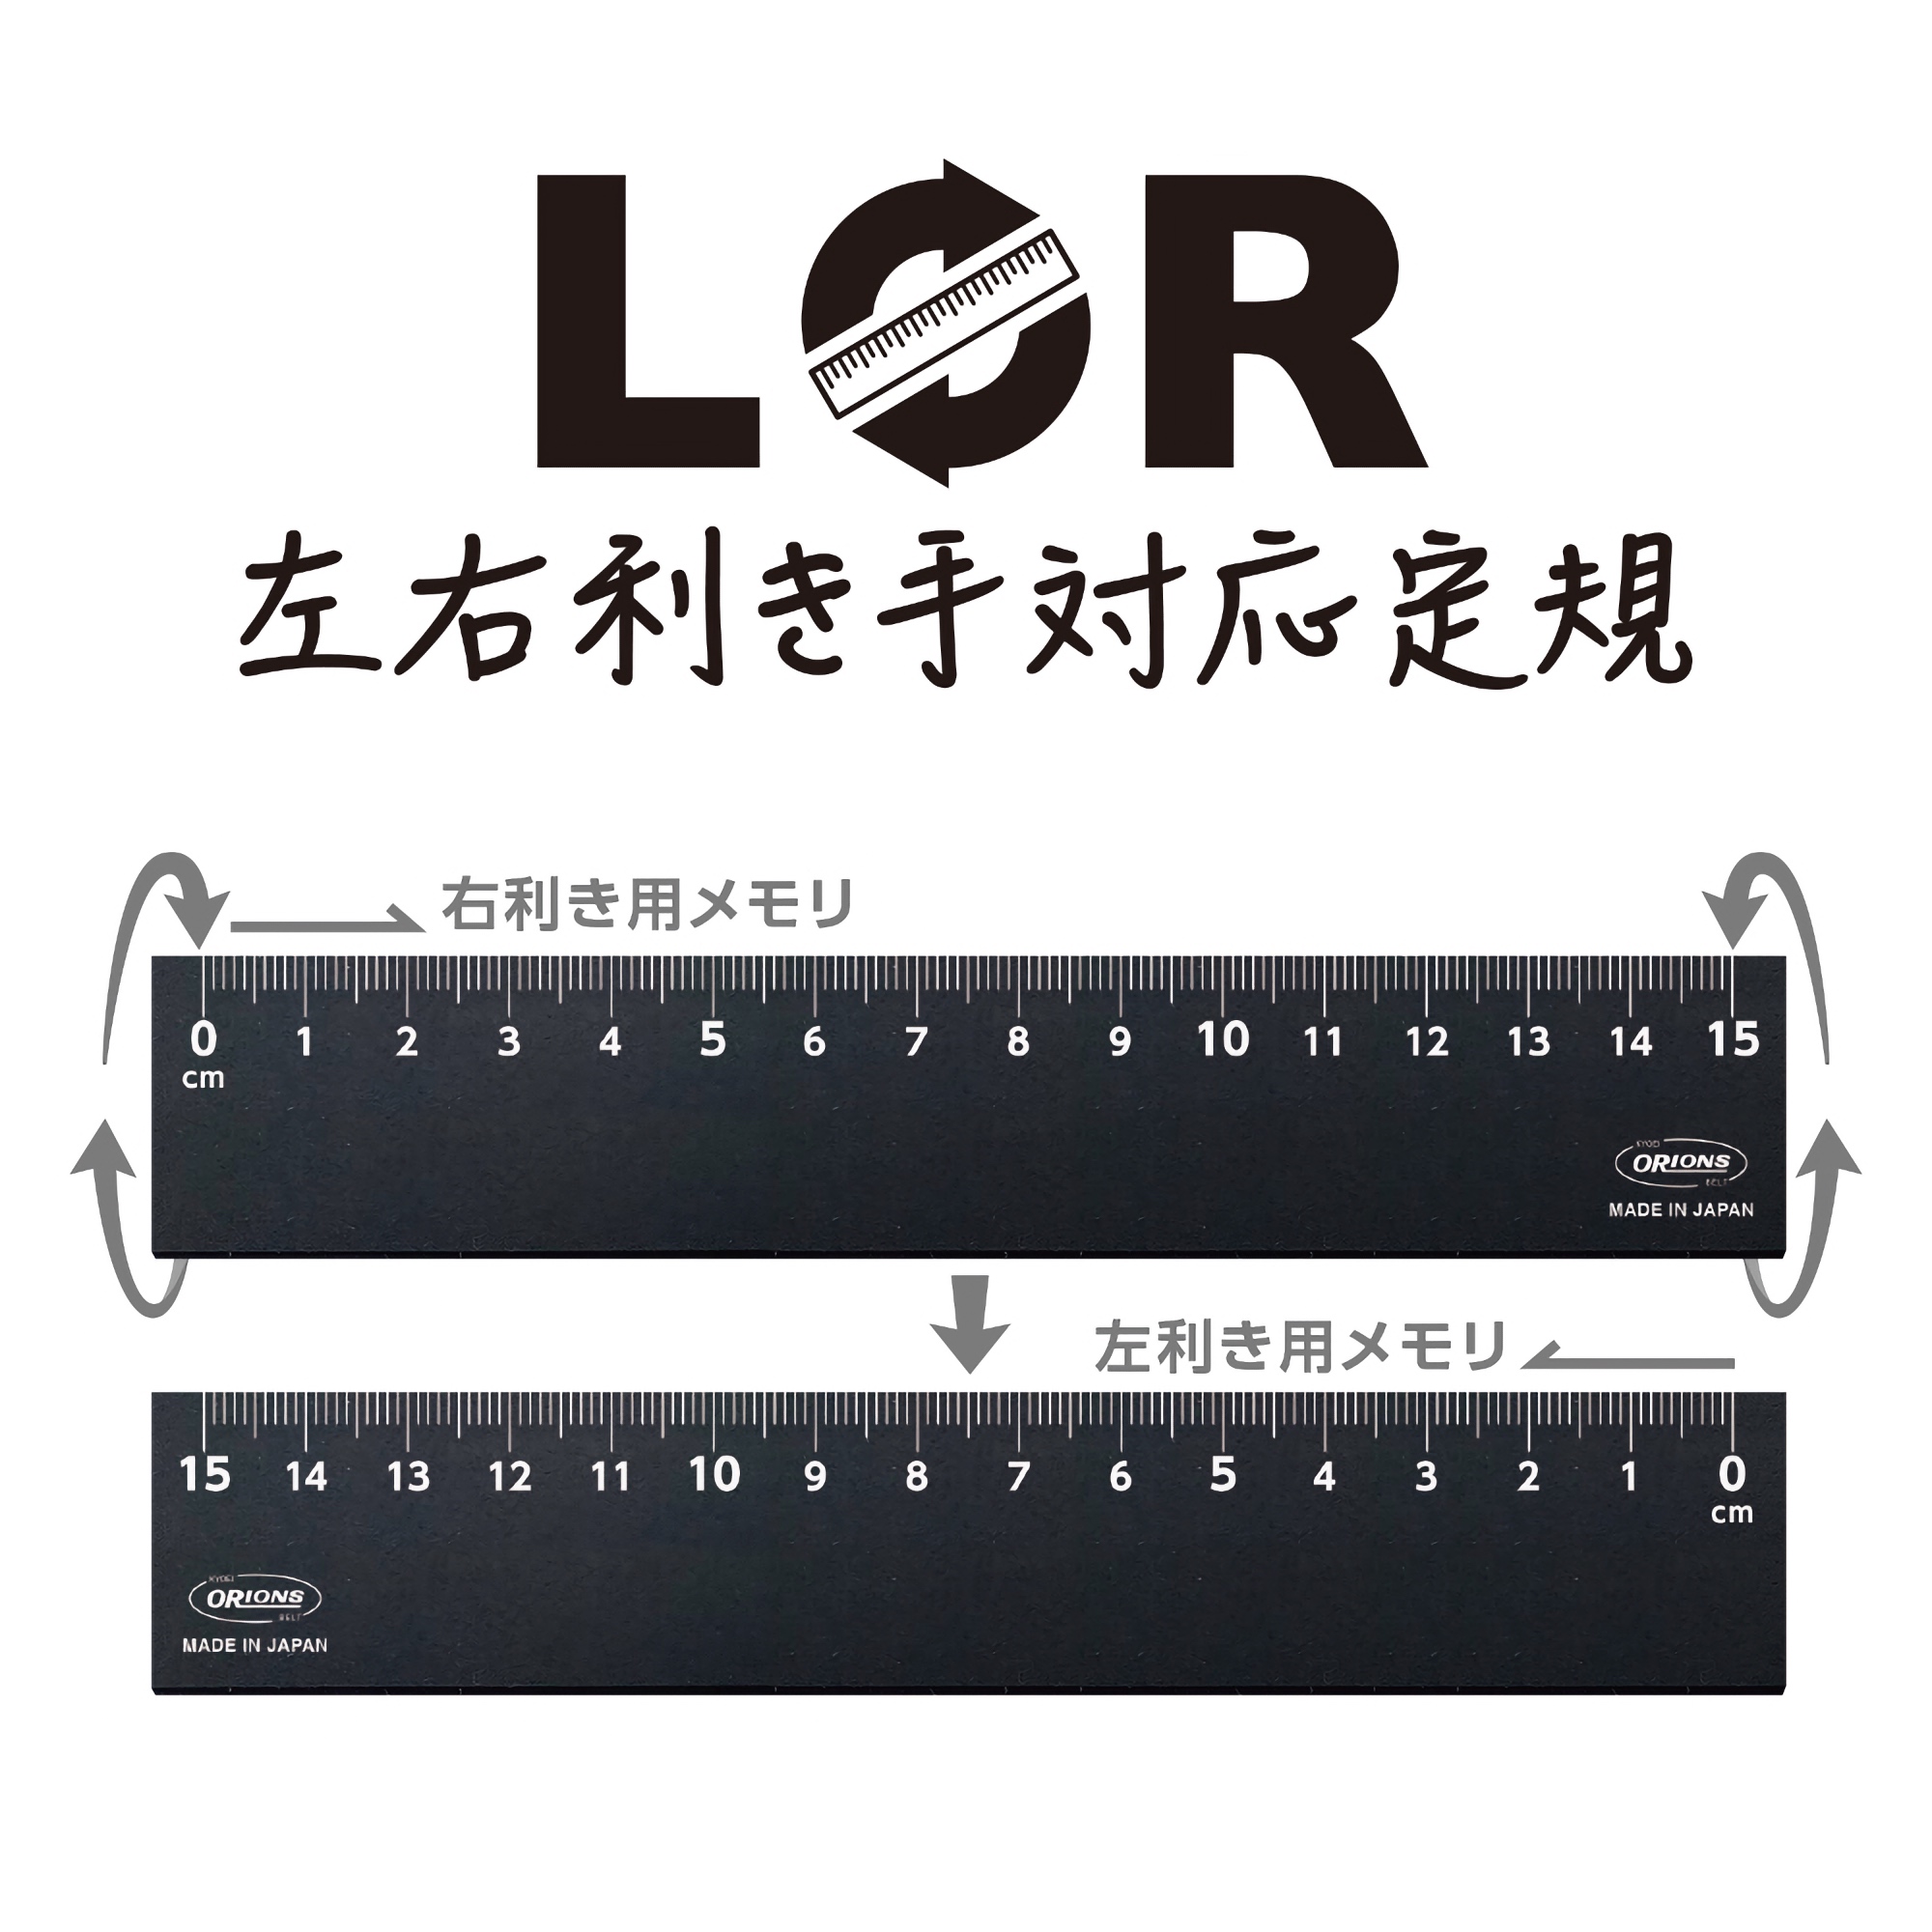 Kyoei Orions LR Left & Right Handed Ruler 15 cm Black